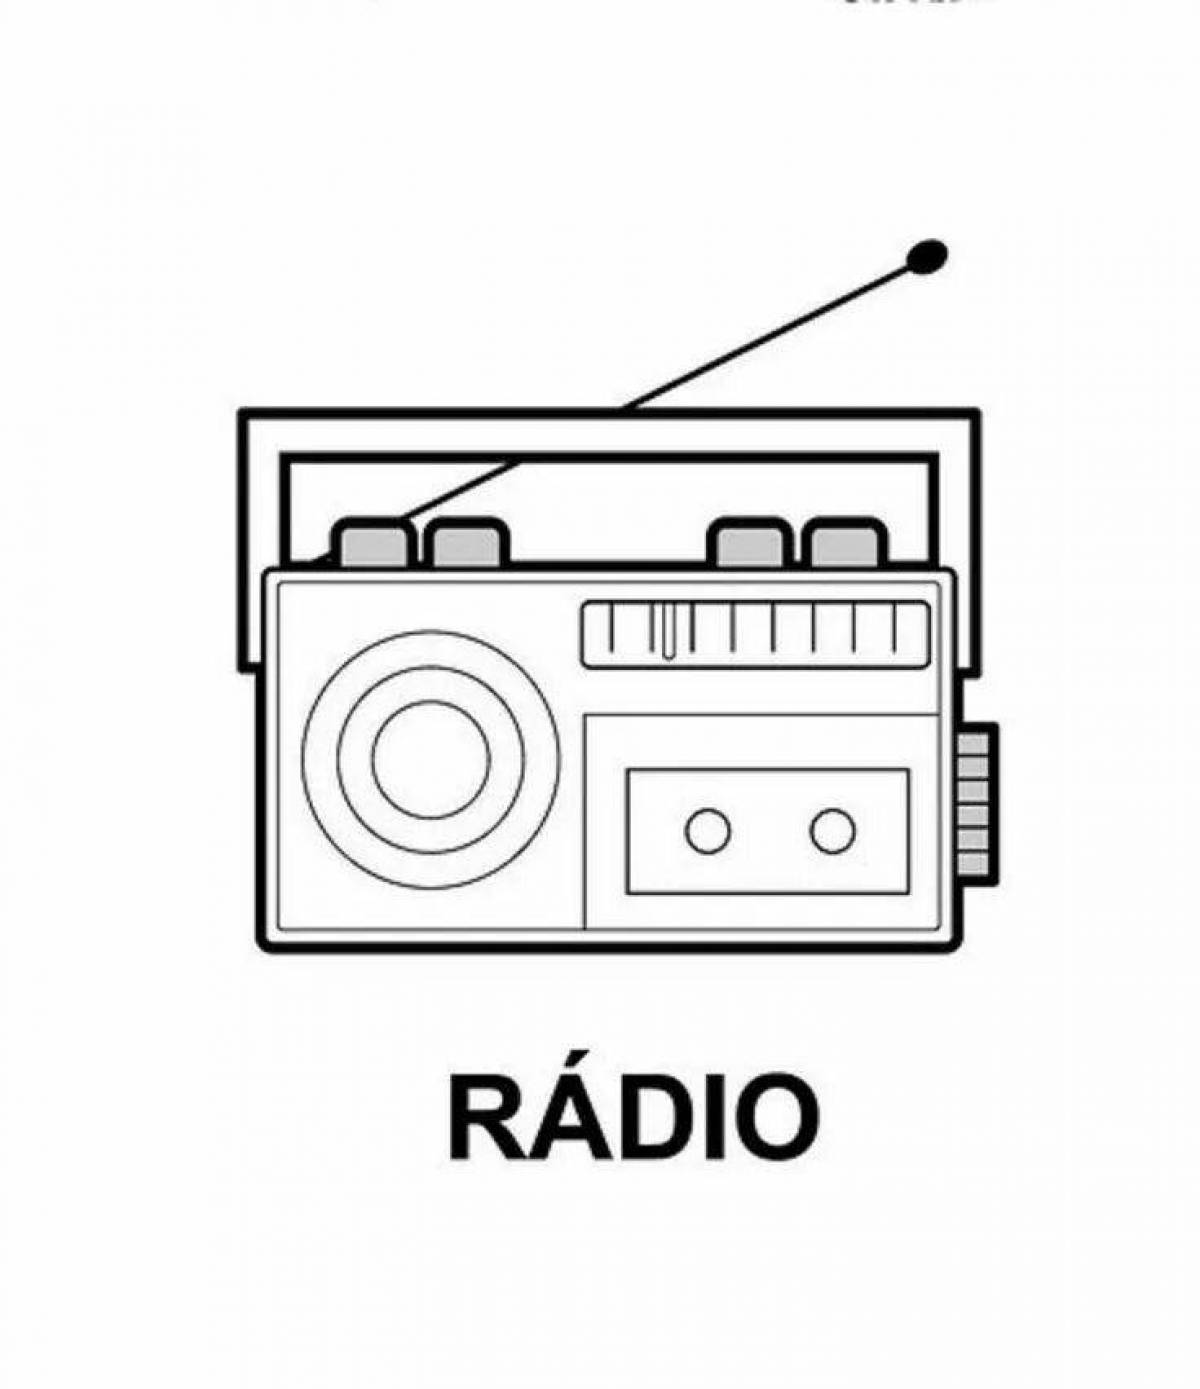 Раскраска радио - Radio coloring